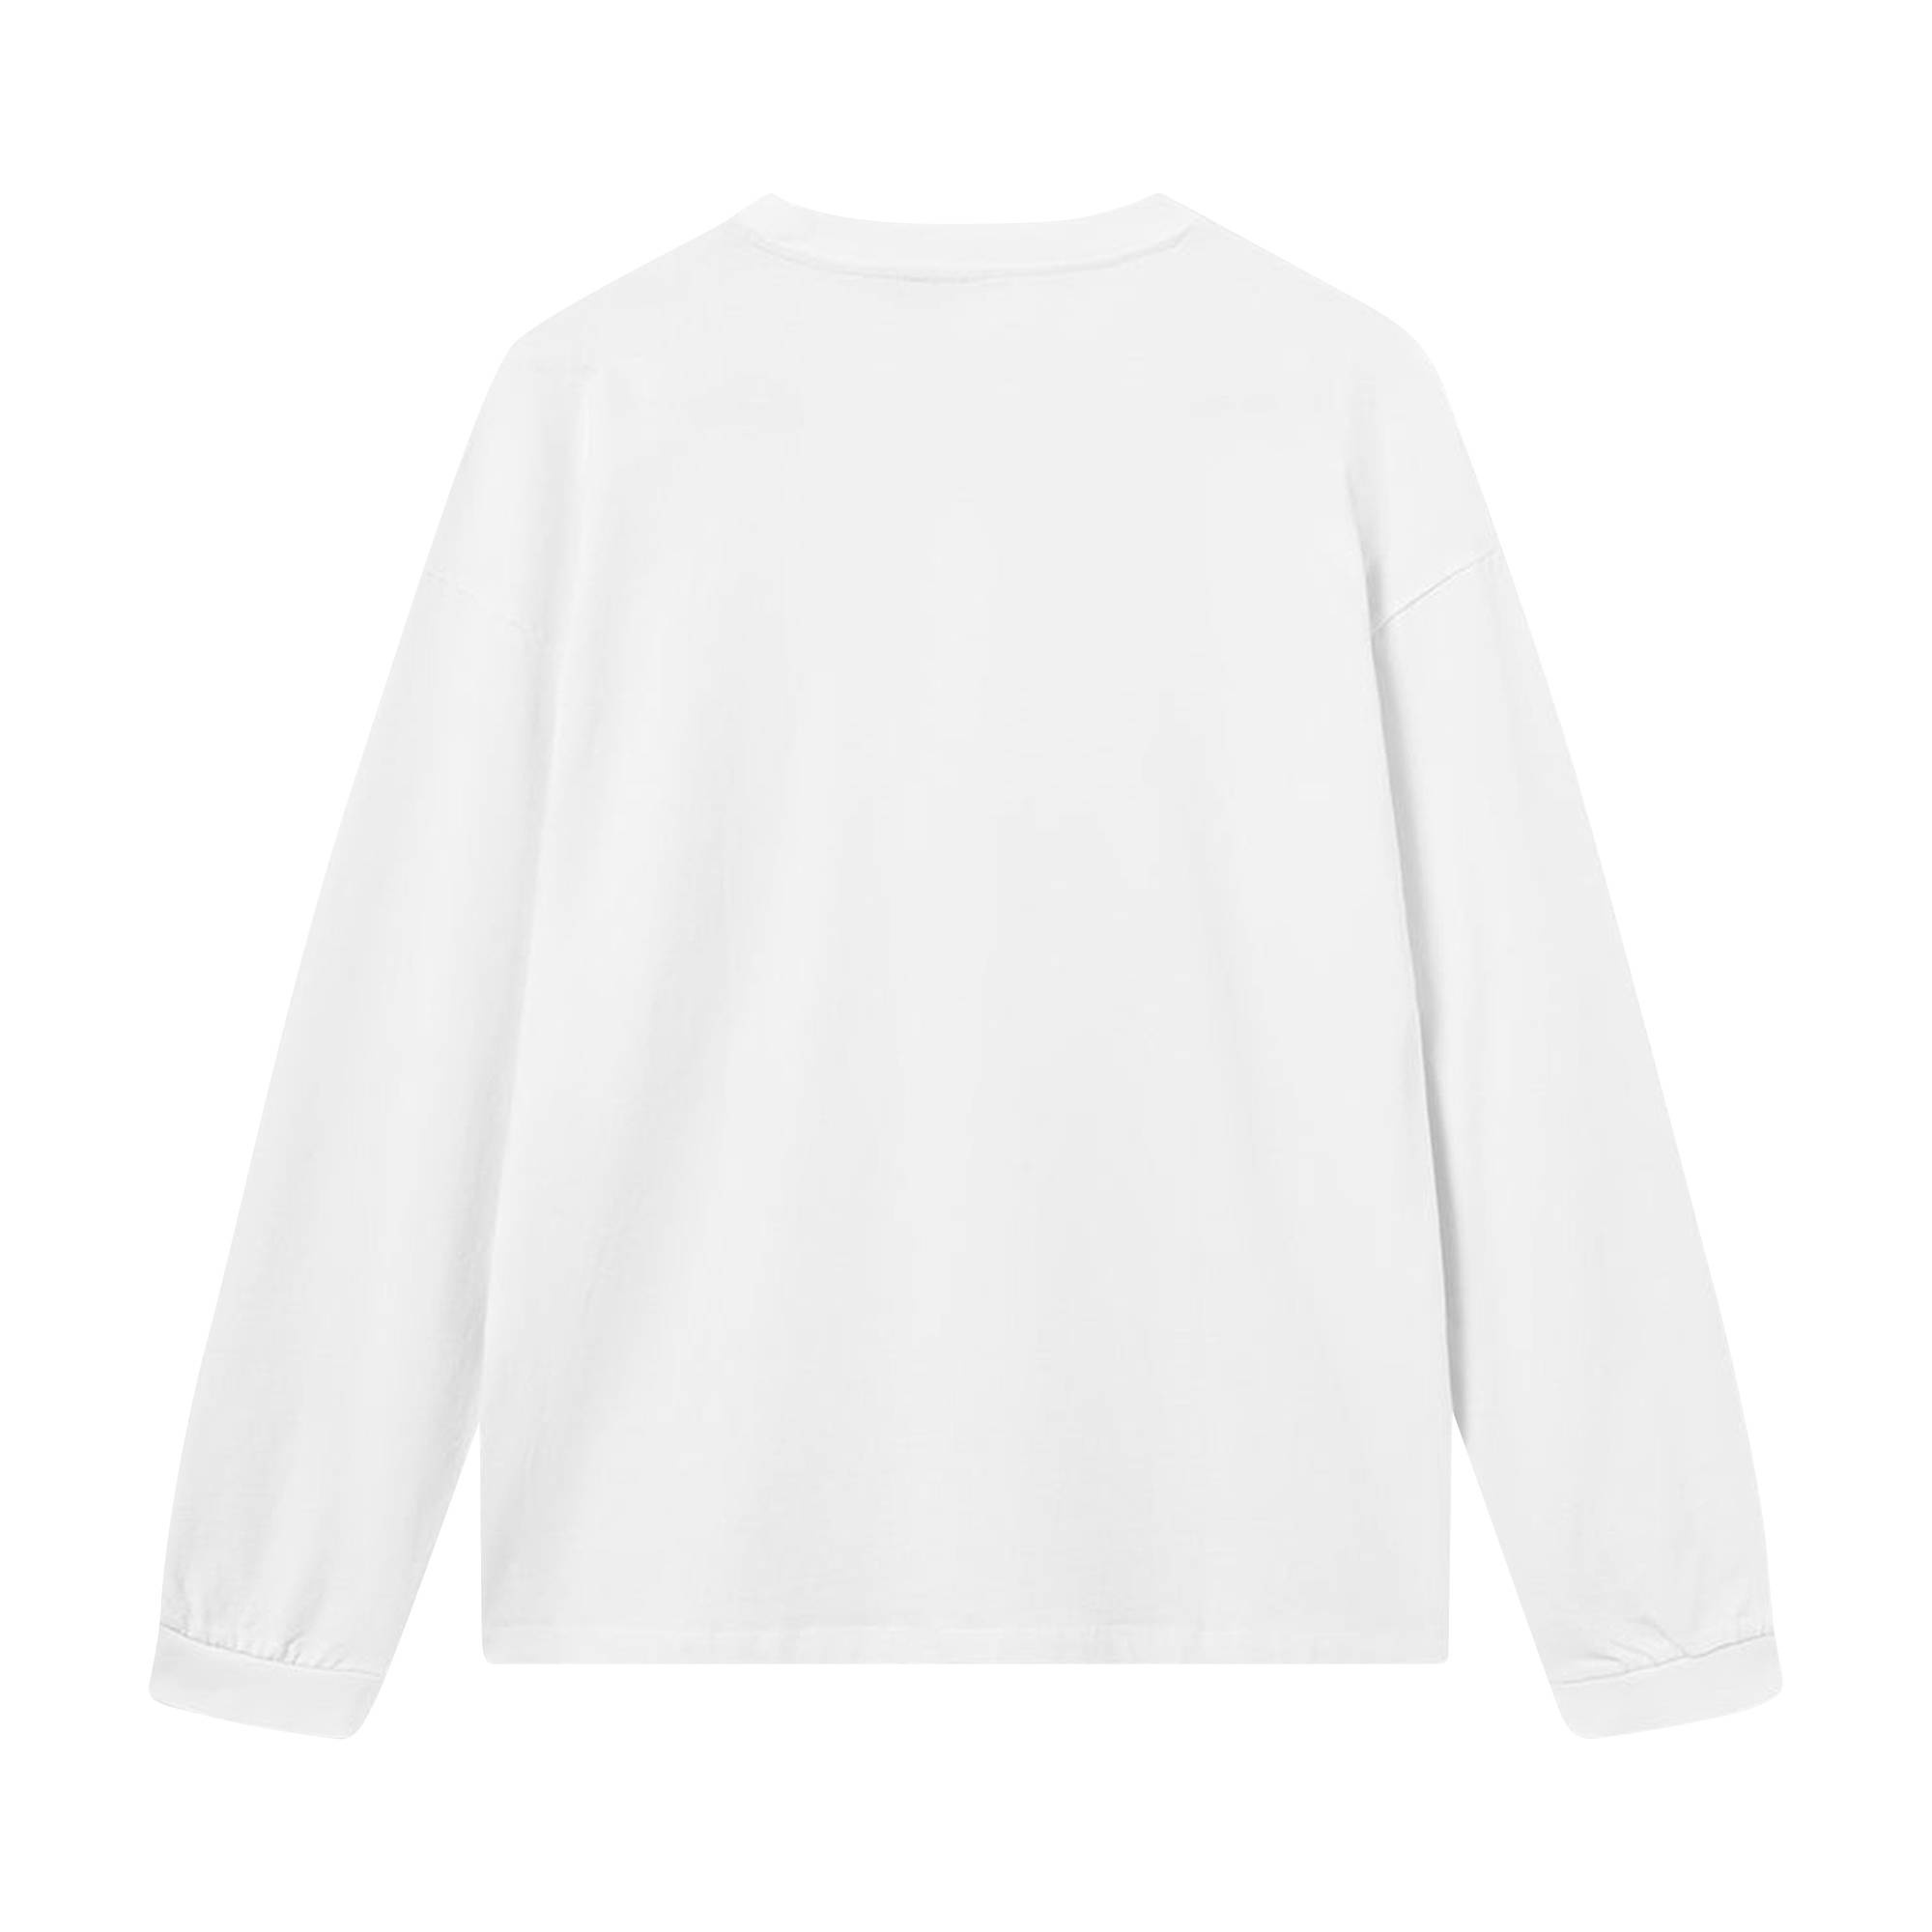 Acronym Long-Sleeve T-Shirt 'White' - 2